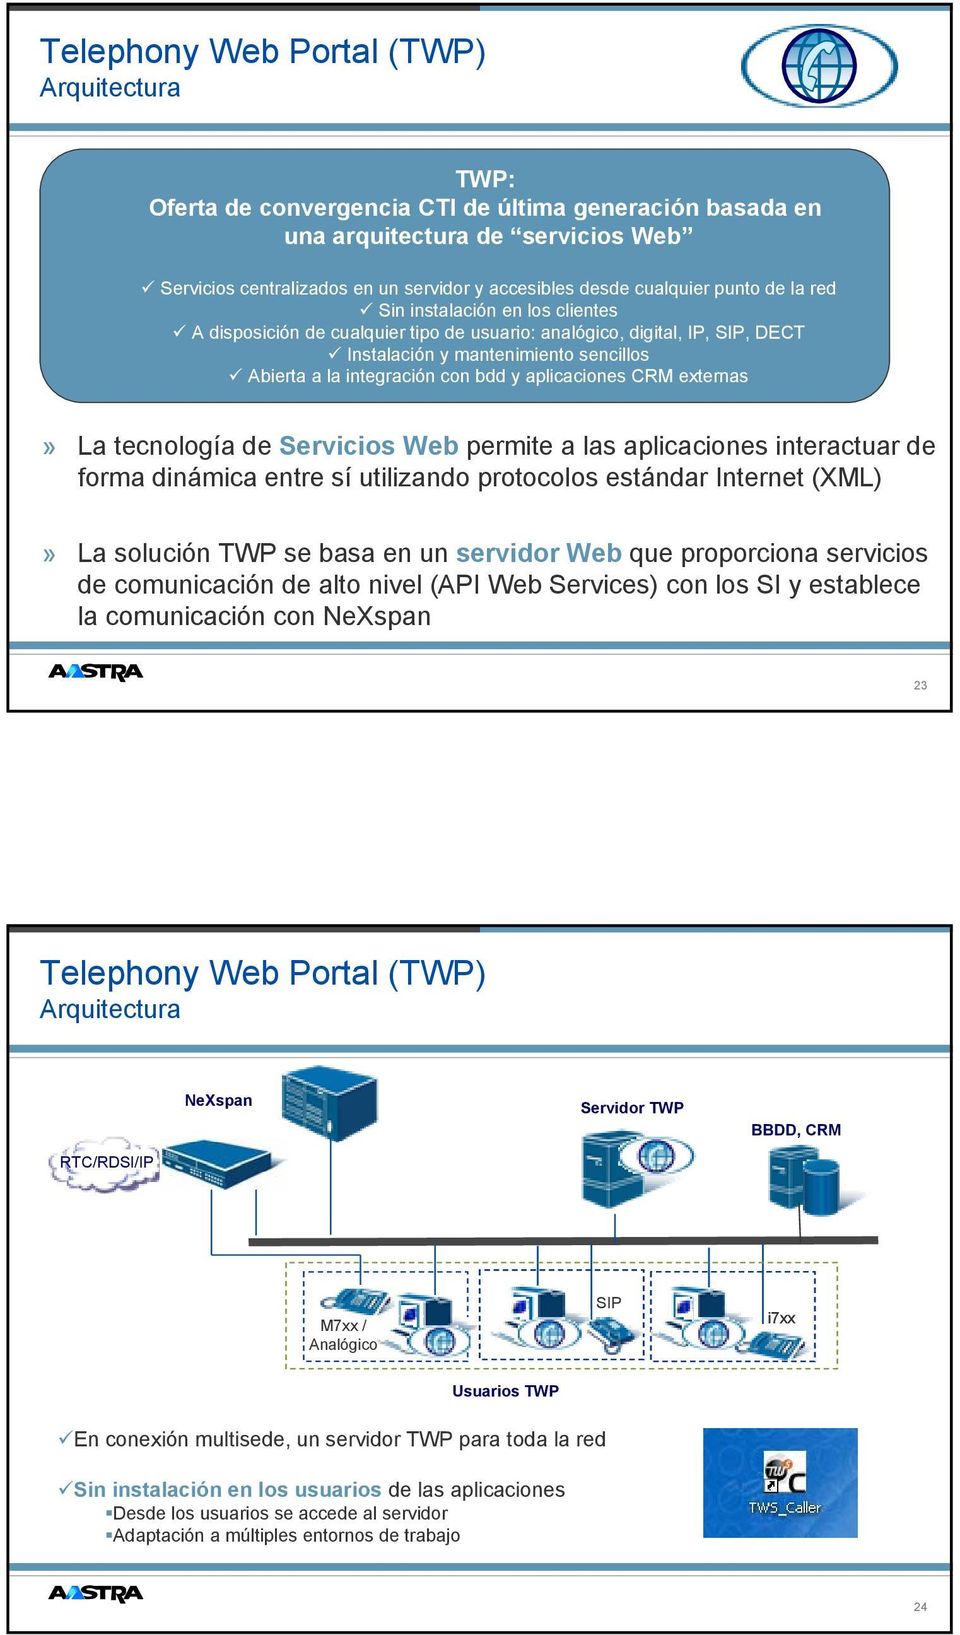 externas» La tecnología de Servicios Web permite a las aplicaciones interactuar de forma dinámica entre sí utilizando protocolos estándar Internet (XML)» La solución TWP se basa en un servidor Web